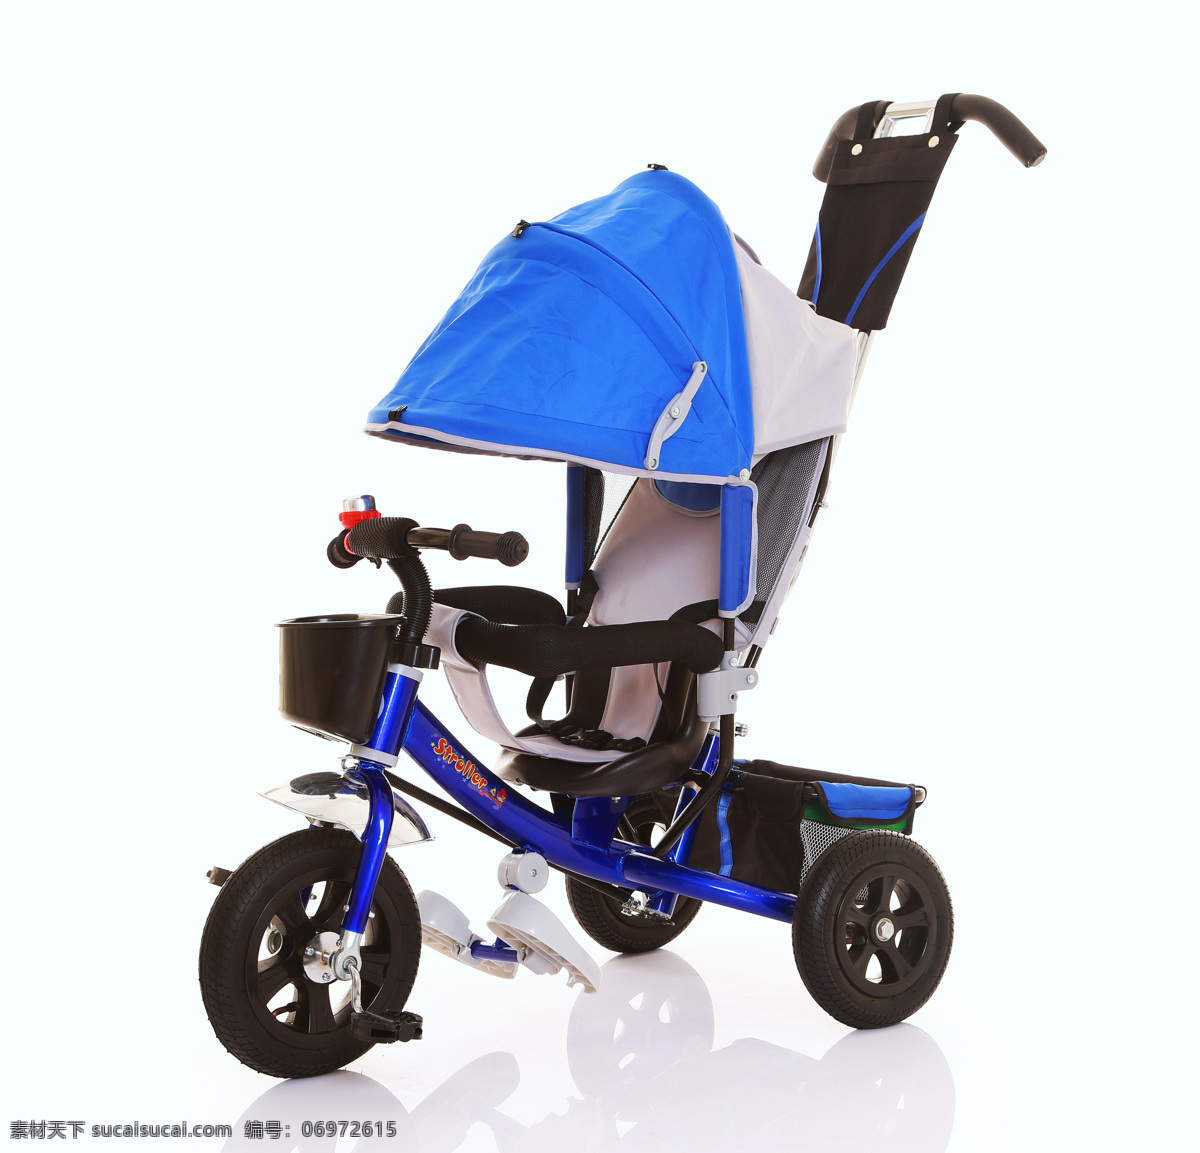 四合 儿童 三轮车 儿童三轮车 脚蹬三轮车 童车 玩具车 手推车 现代科技 交通工具